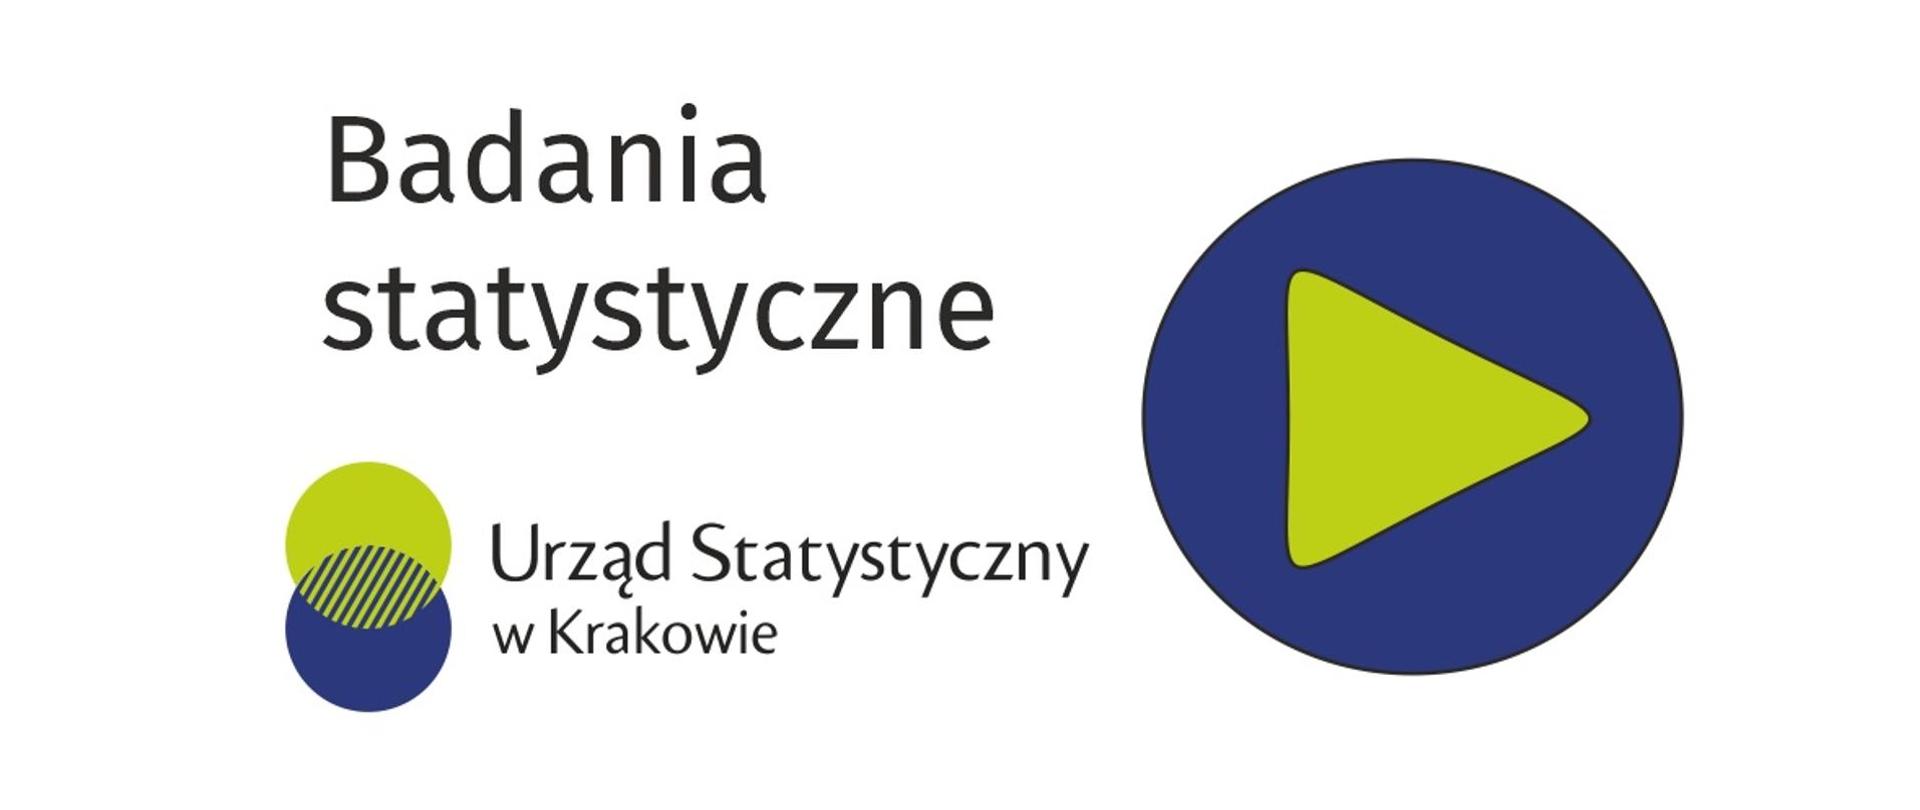 grafika przedstawia logo oraz napis Badania statystyczne Urząd Statystyczny w Krakowie